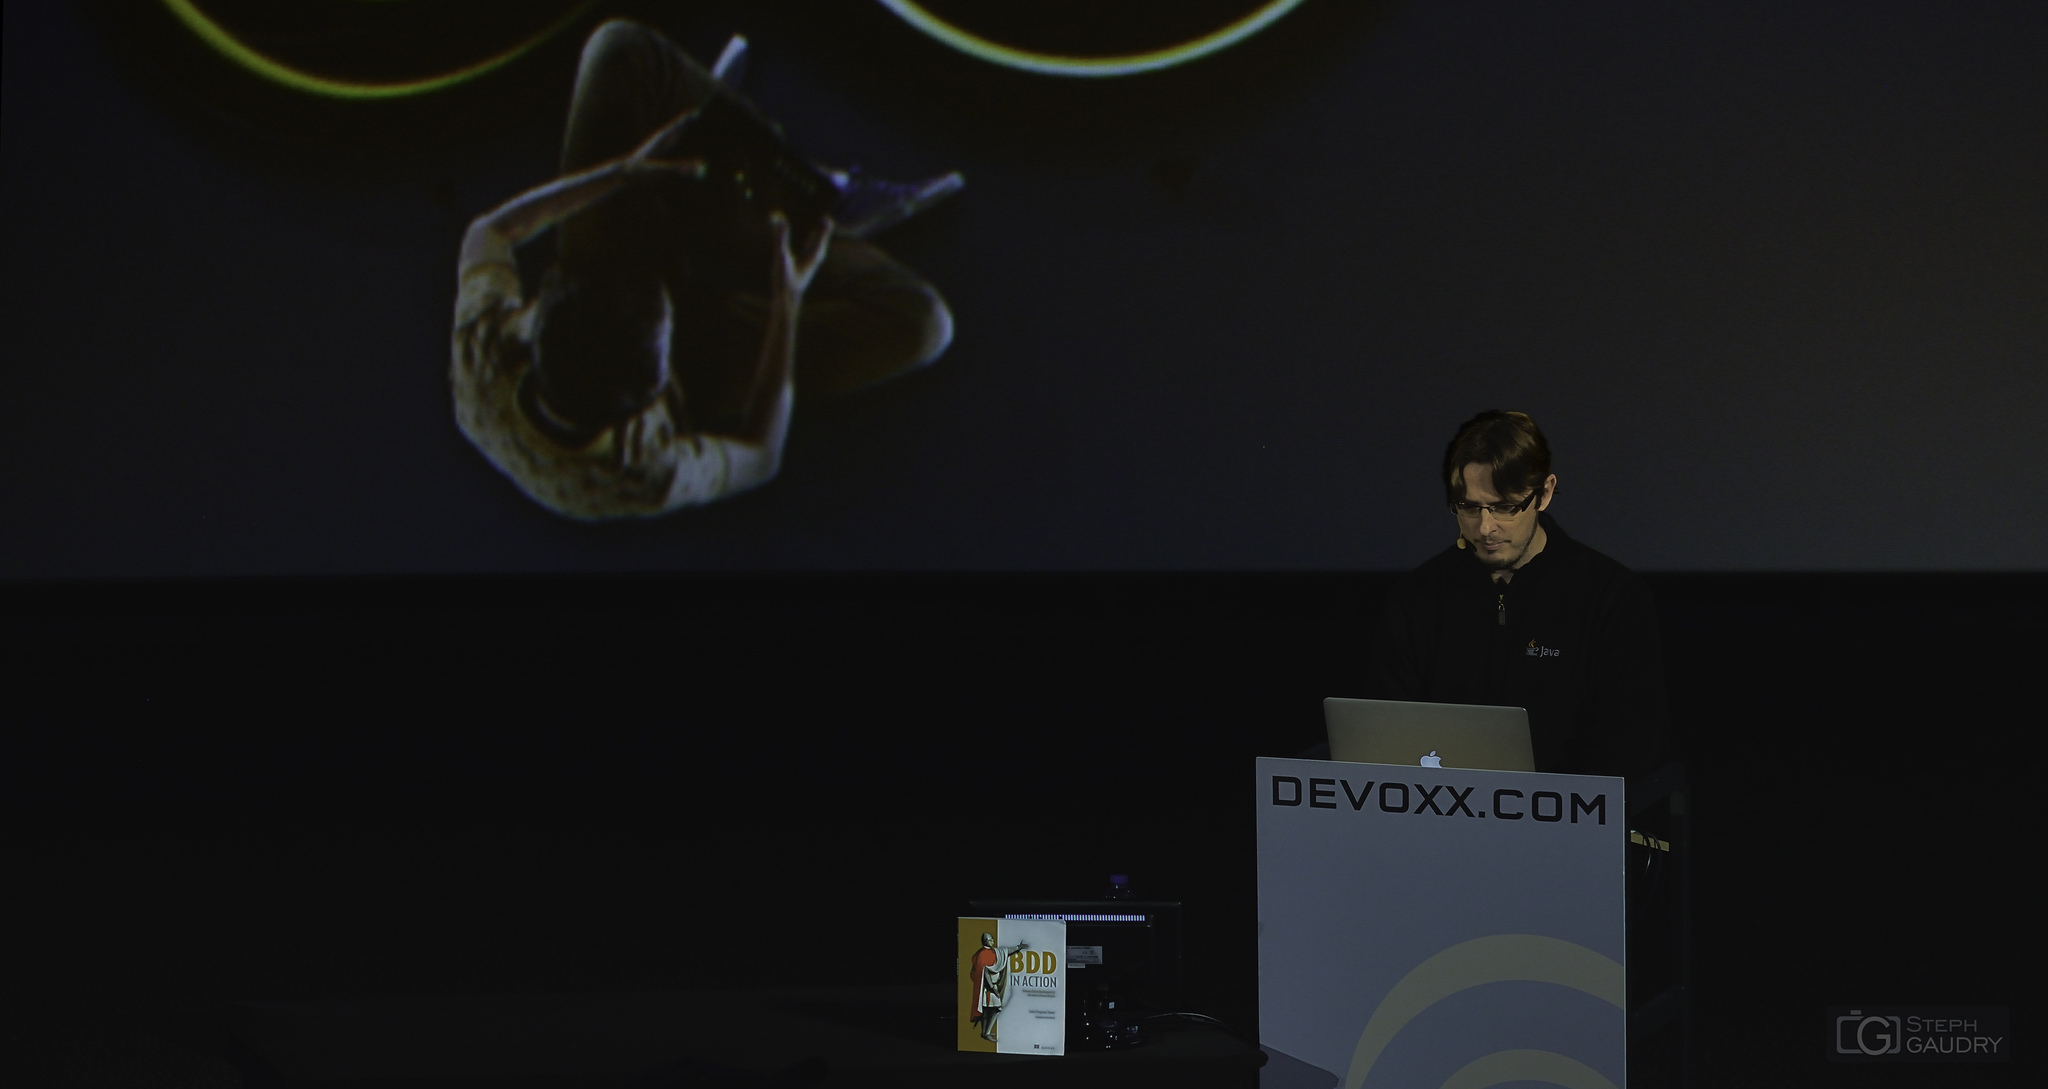 Devoxx 2014 - John Smart  - BDD in action [Klicken Sie hier, um die Diashow zu starten]